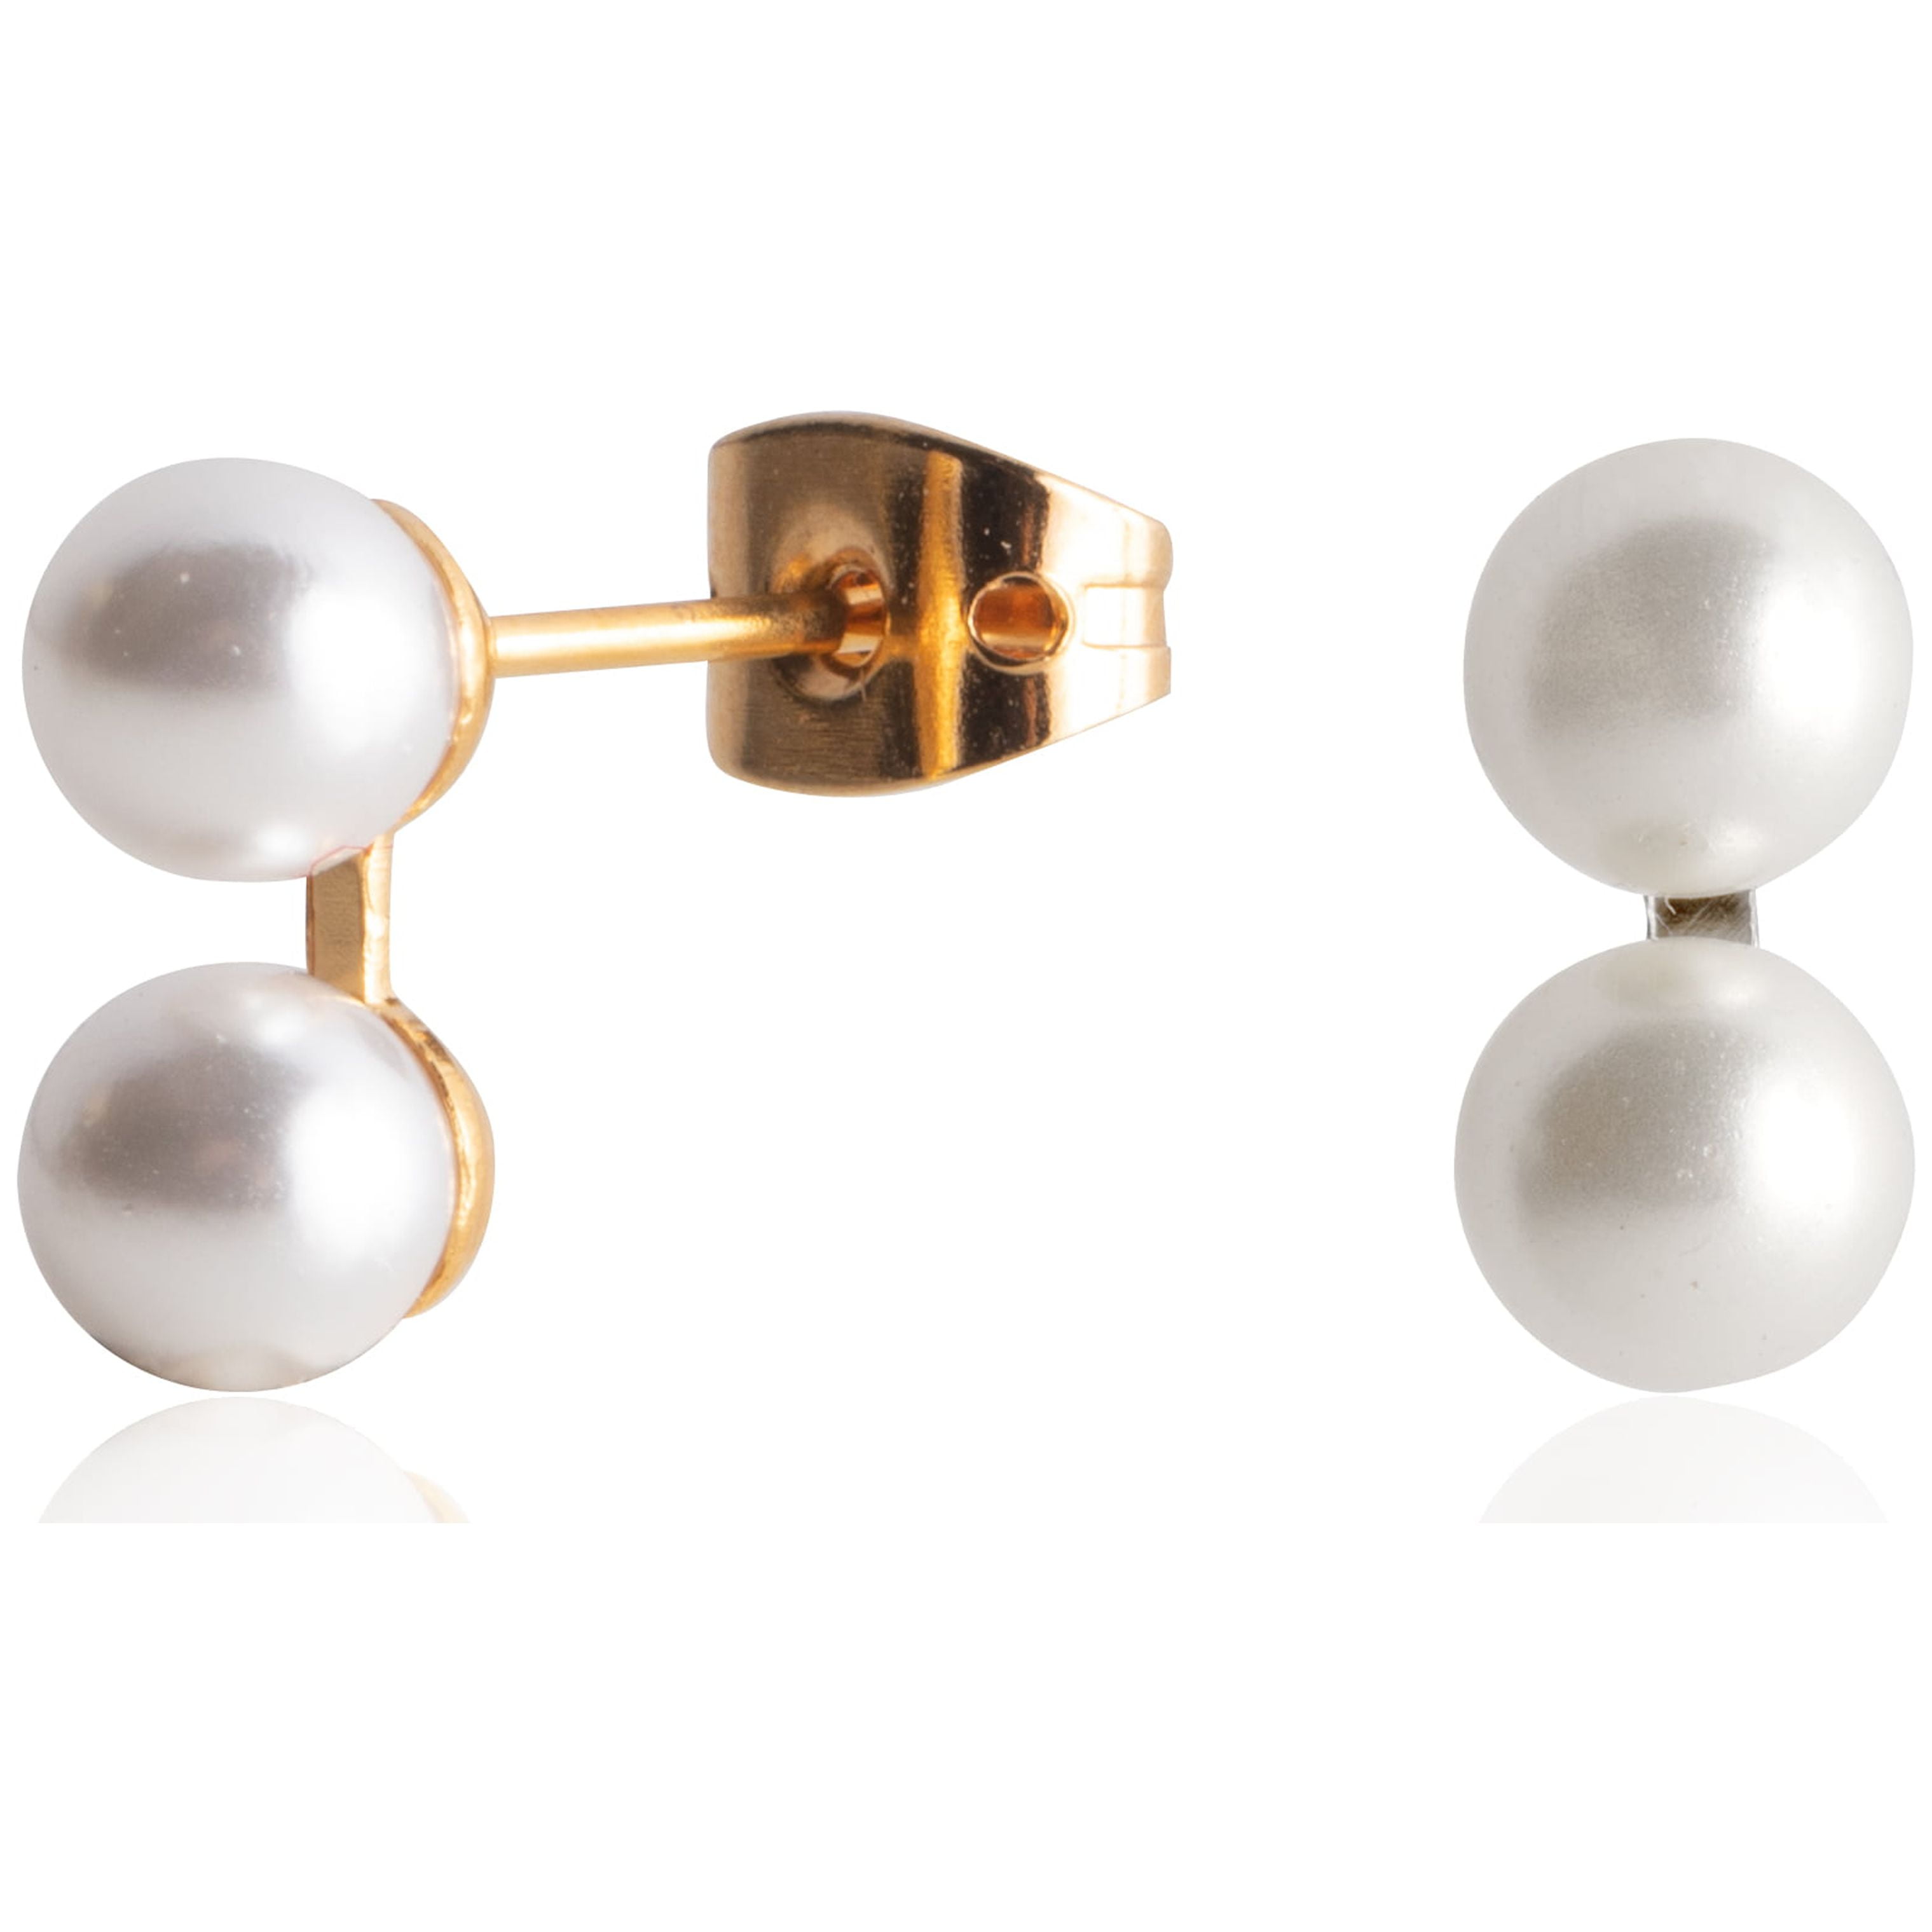 Elegant 22P Gold & Black Crystal Pearl Earrings